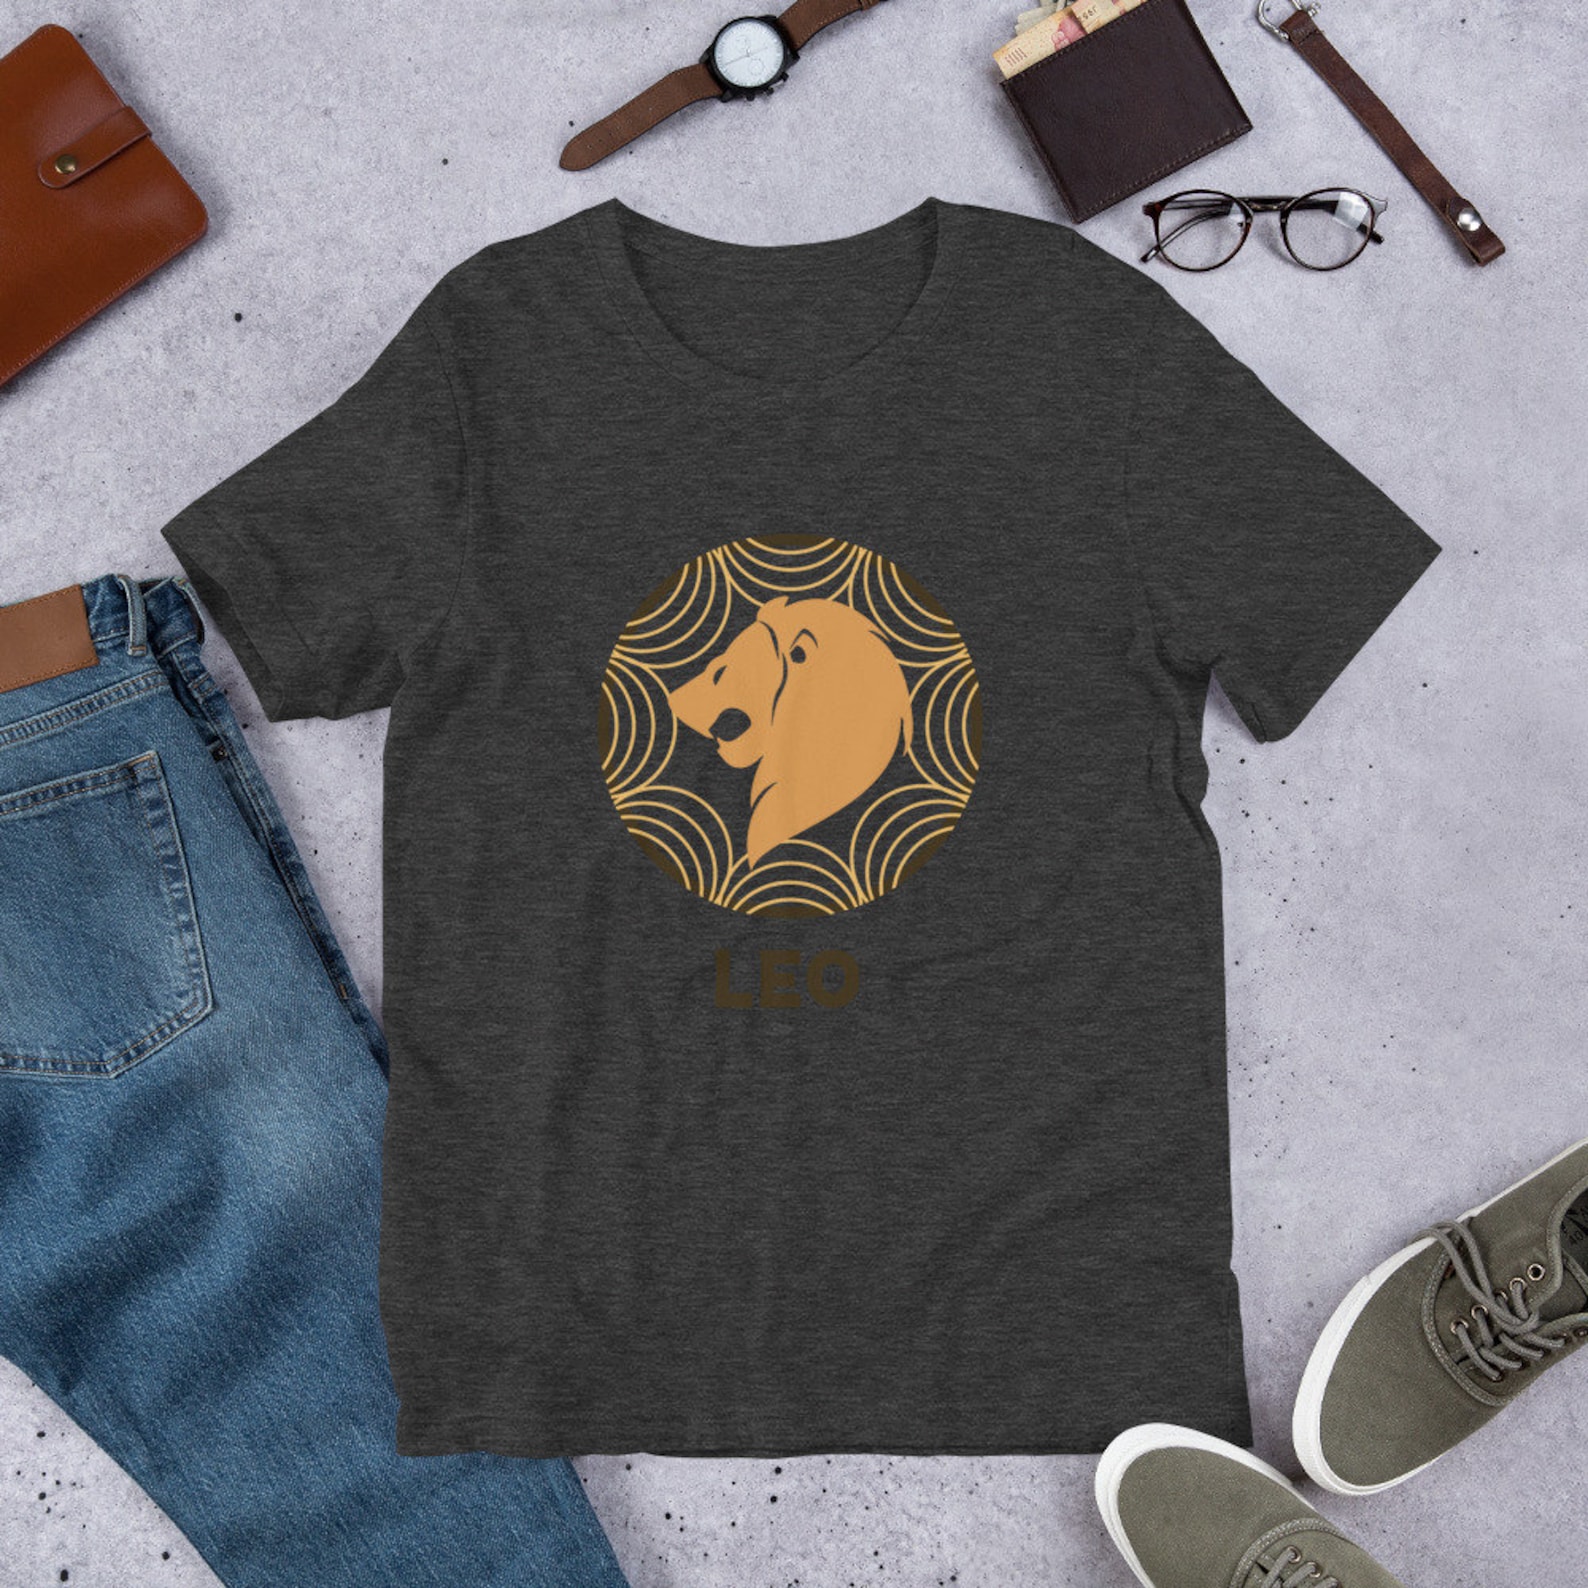 Leo Shirt Leo Tee Funny Tee Leo T-Shirt Gift Gift Idea | Etsy